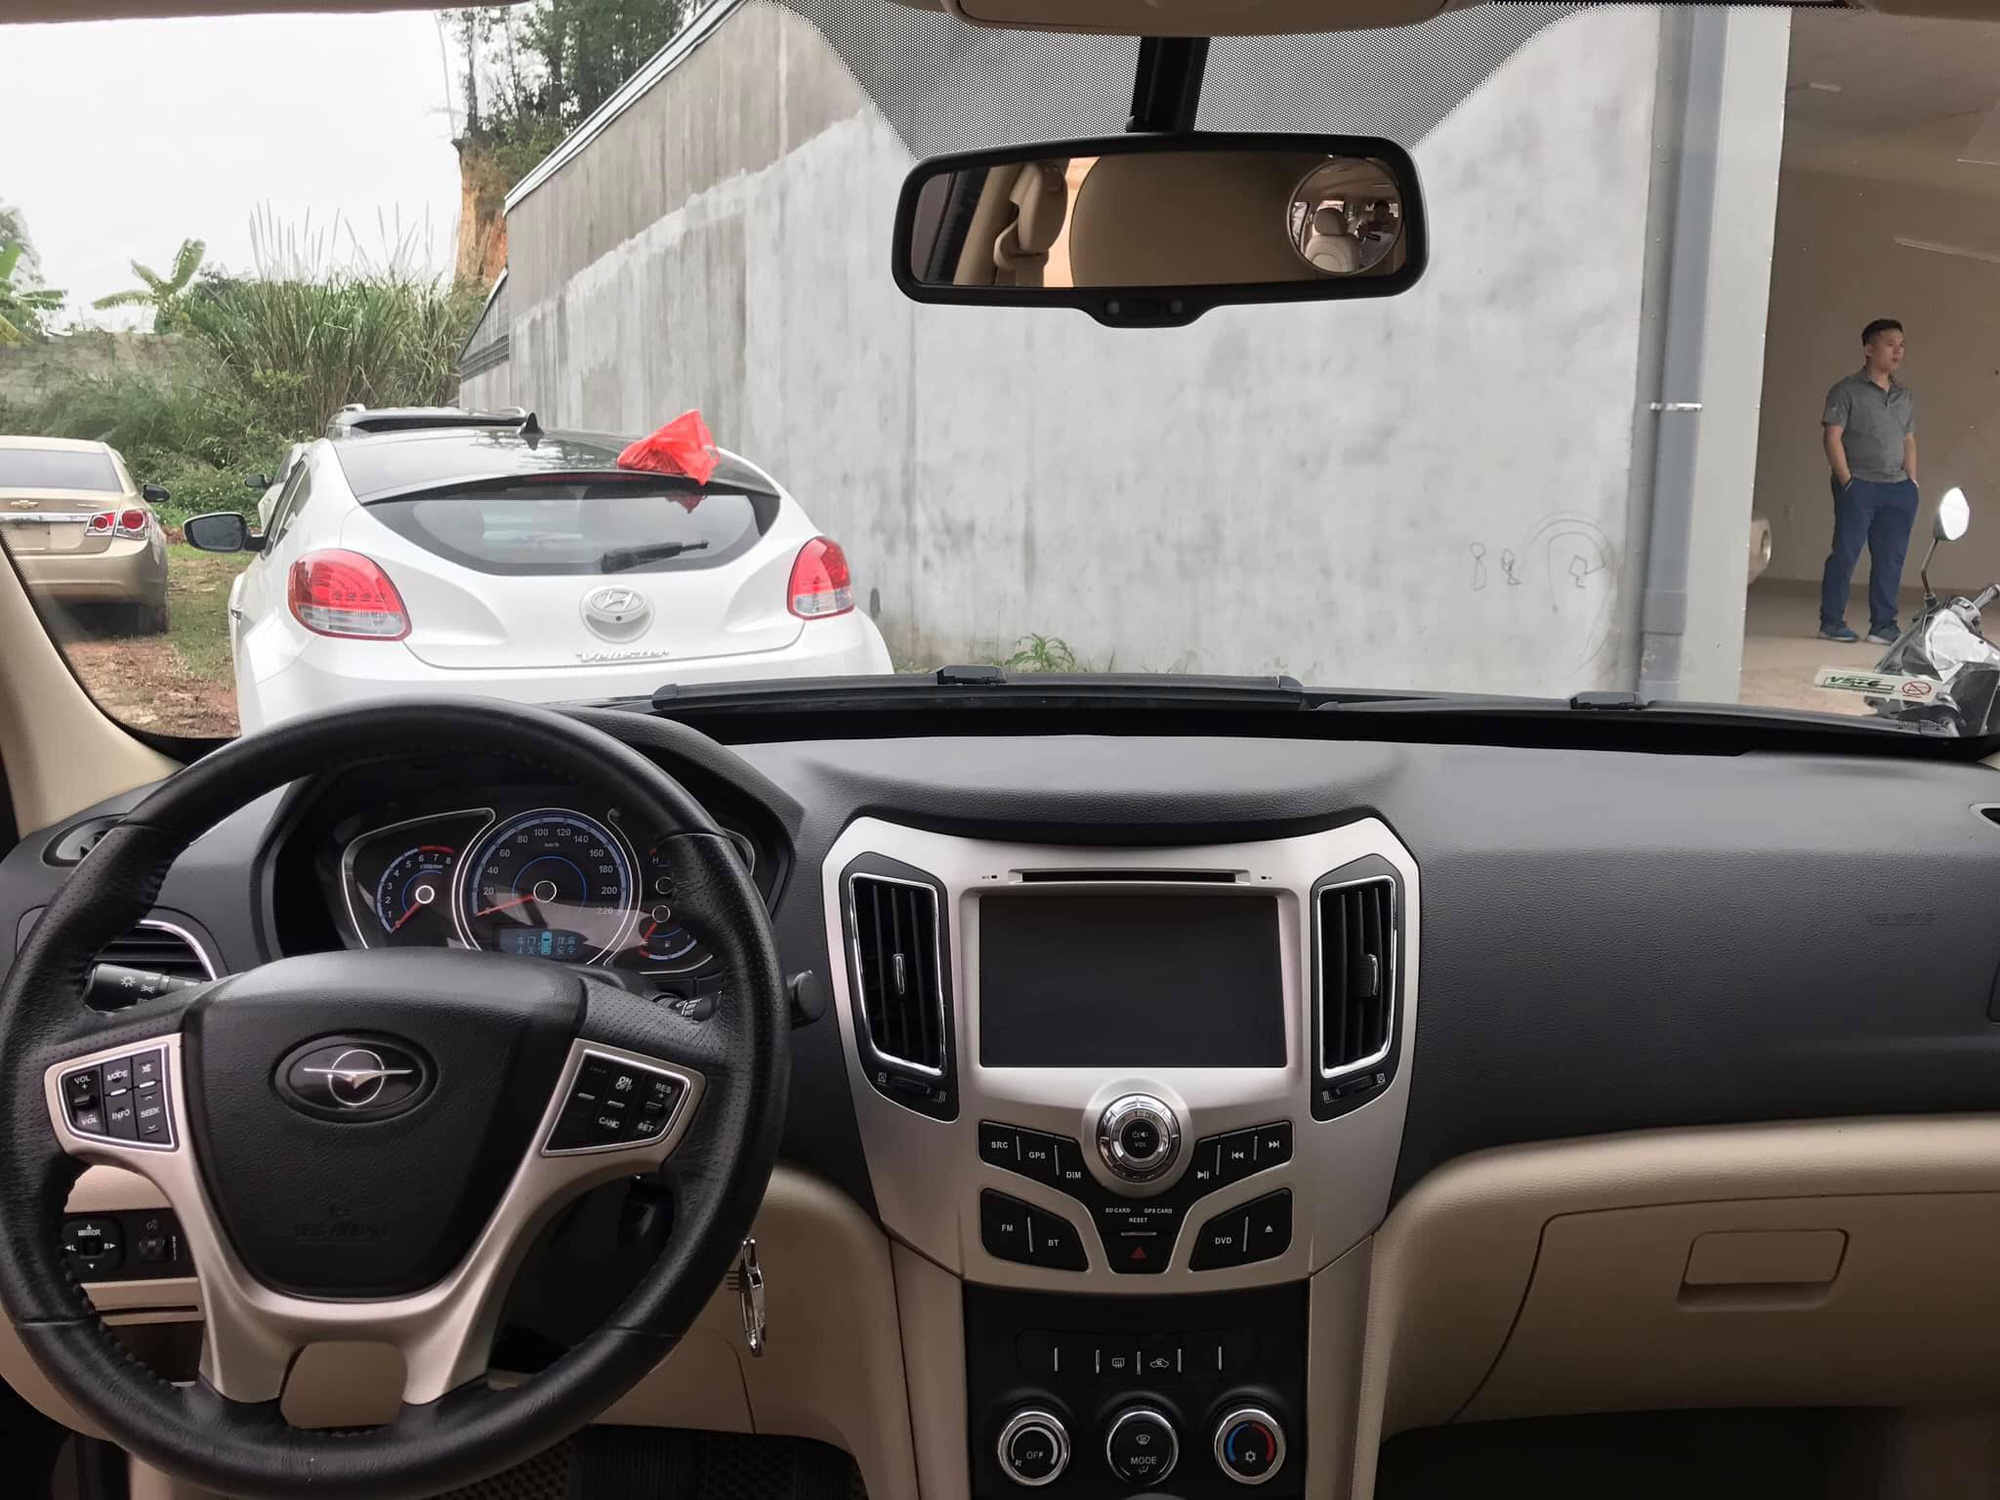 Bán SUV Trung Quốc giống Hyundai SantaFe với giá 300 triệu, chủ xe khẳng định: Sơn bóng như gương, bán xe không sợ lỗ - Ảnh 4.